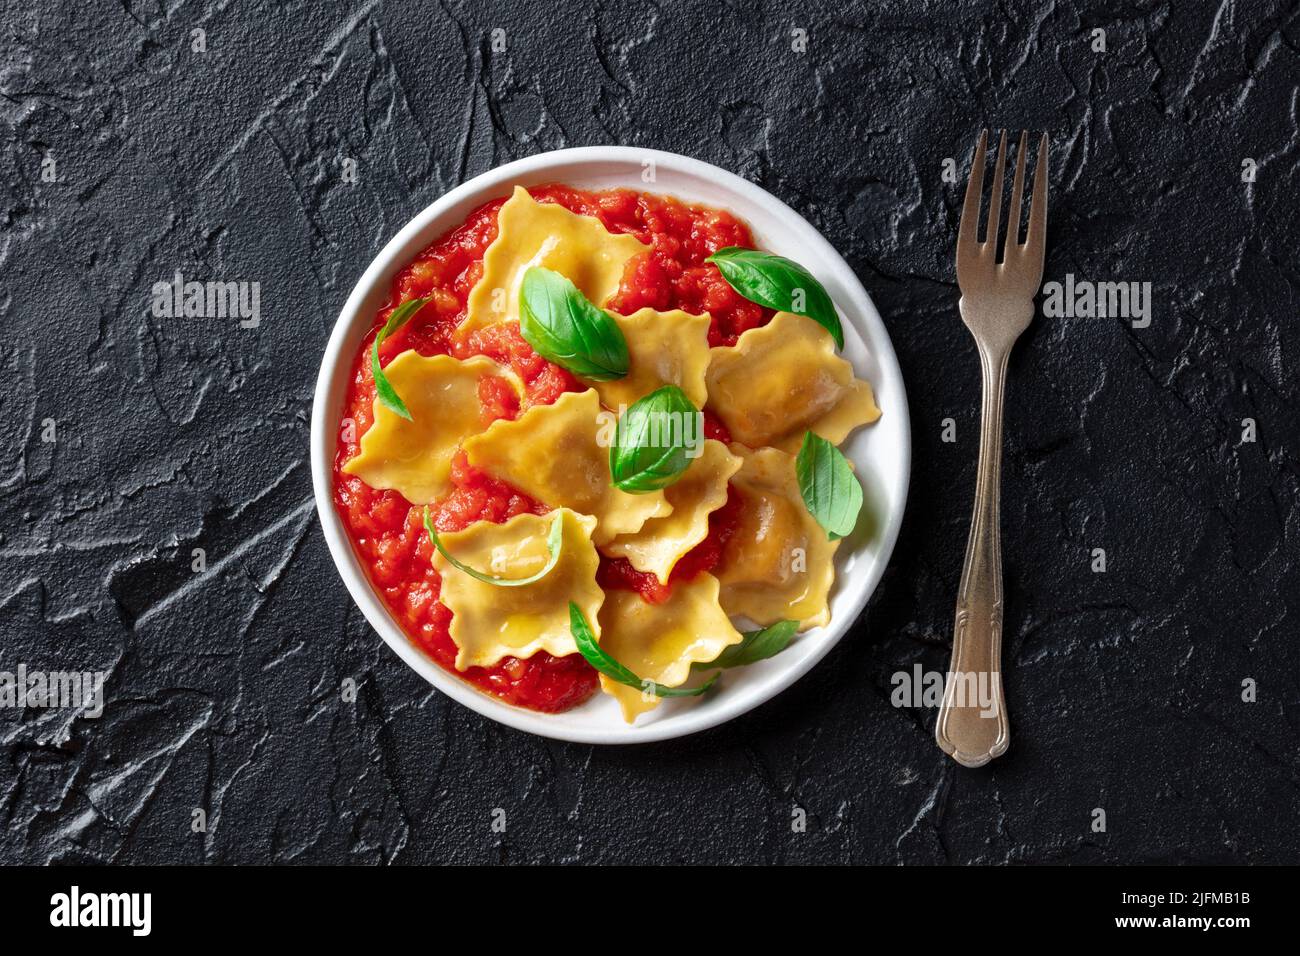 Ravioli con salsa de tomate y hojas frescas de albahaca en un plato, sobre la cabeza plana tiro sobre un fondo negro pizarra, con un tenedor Foto de stock